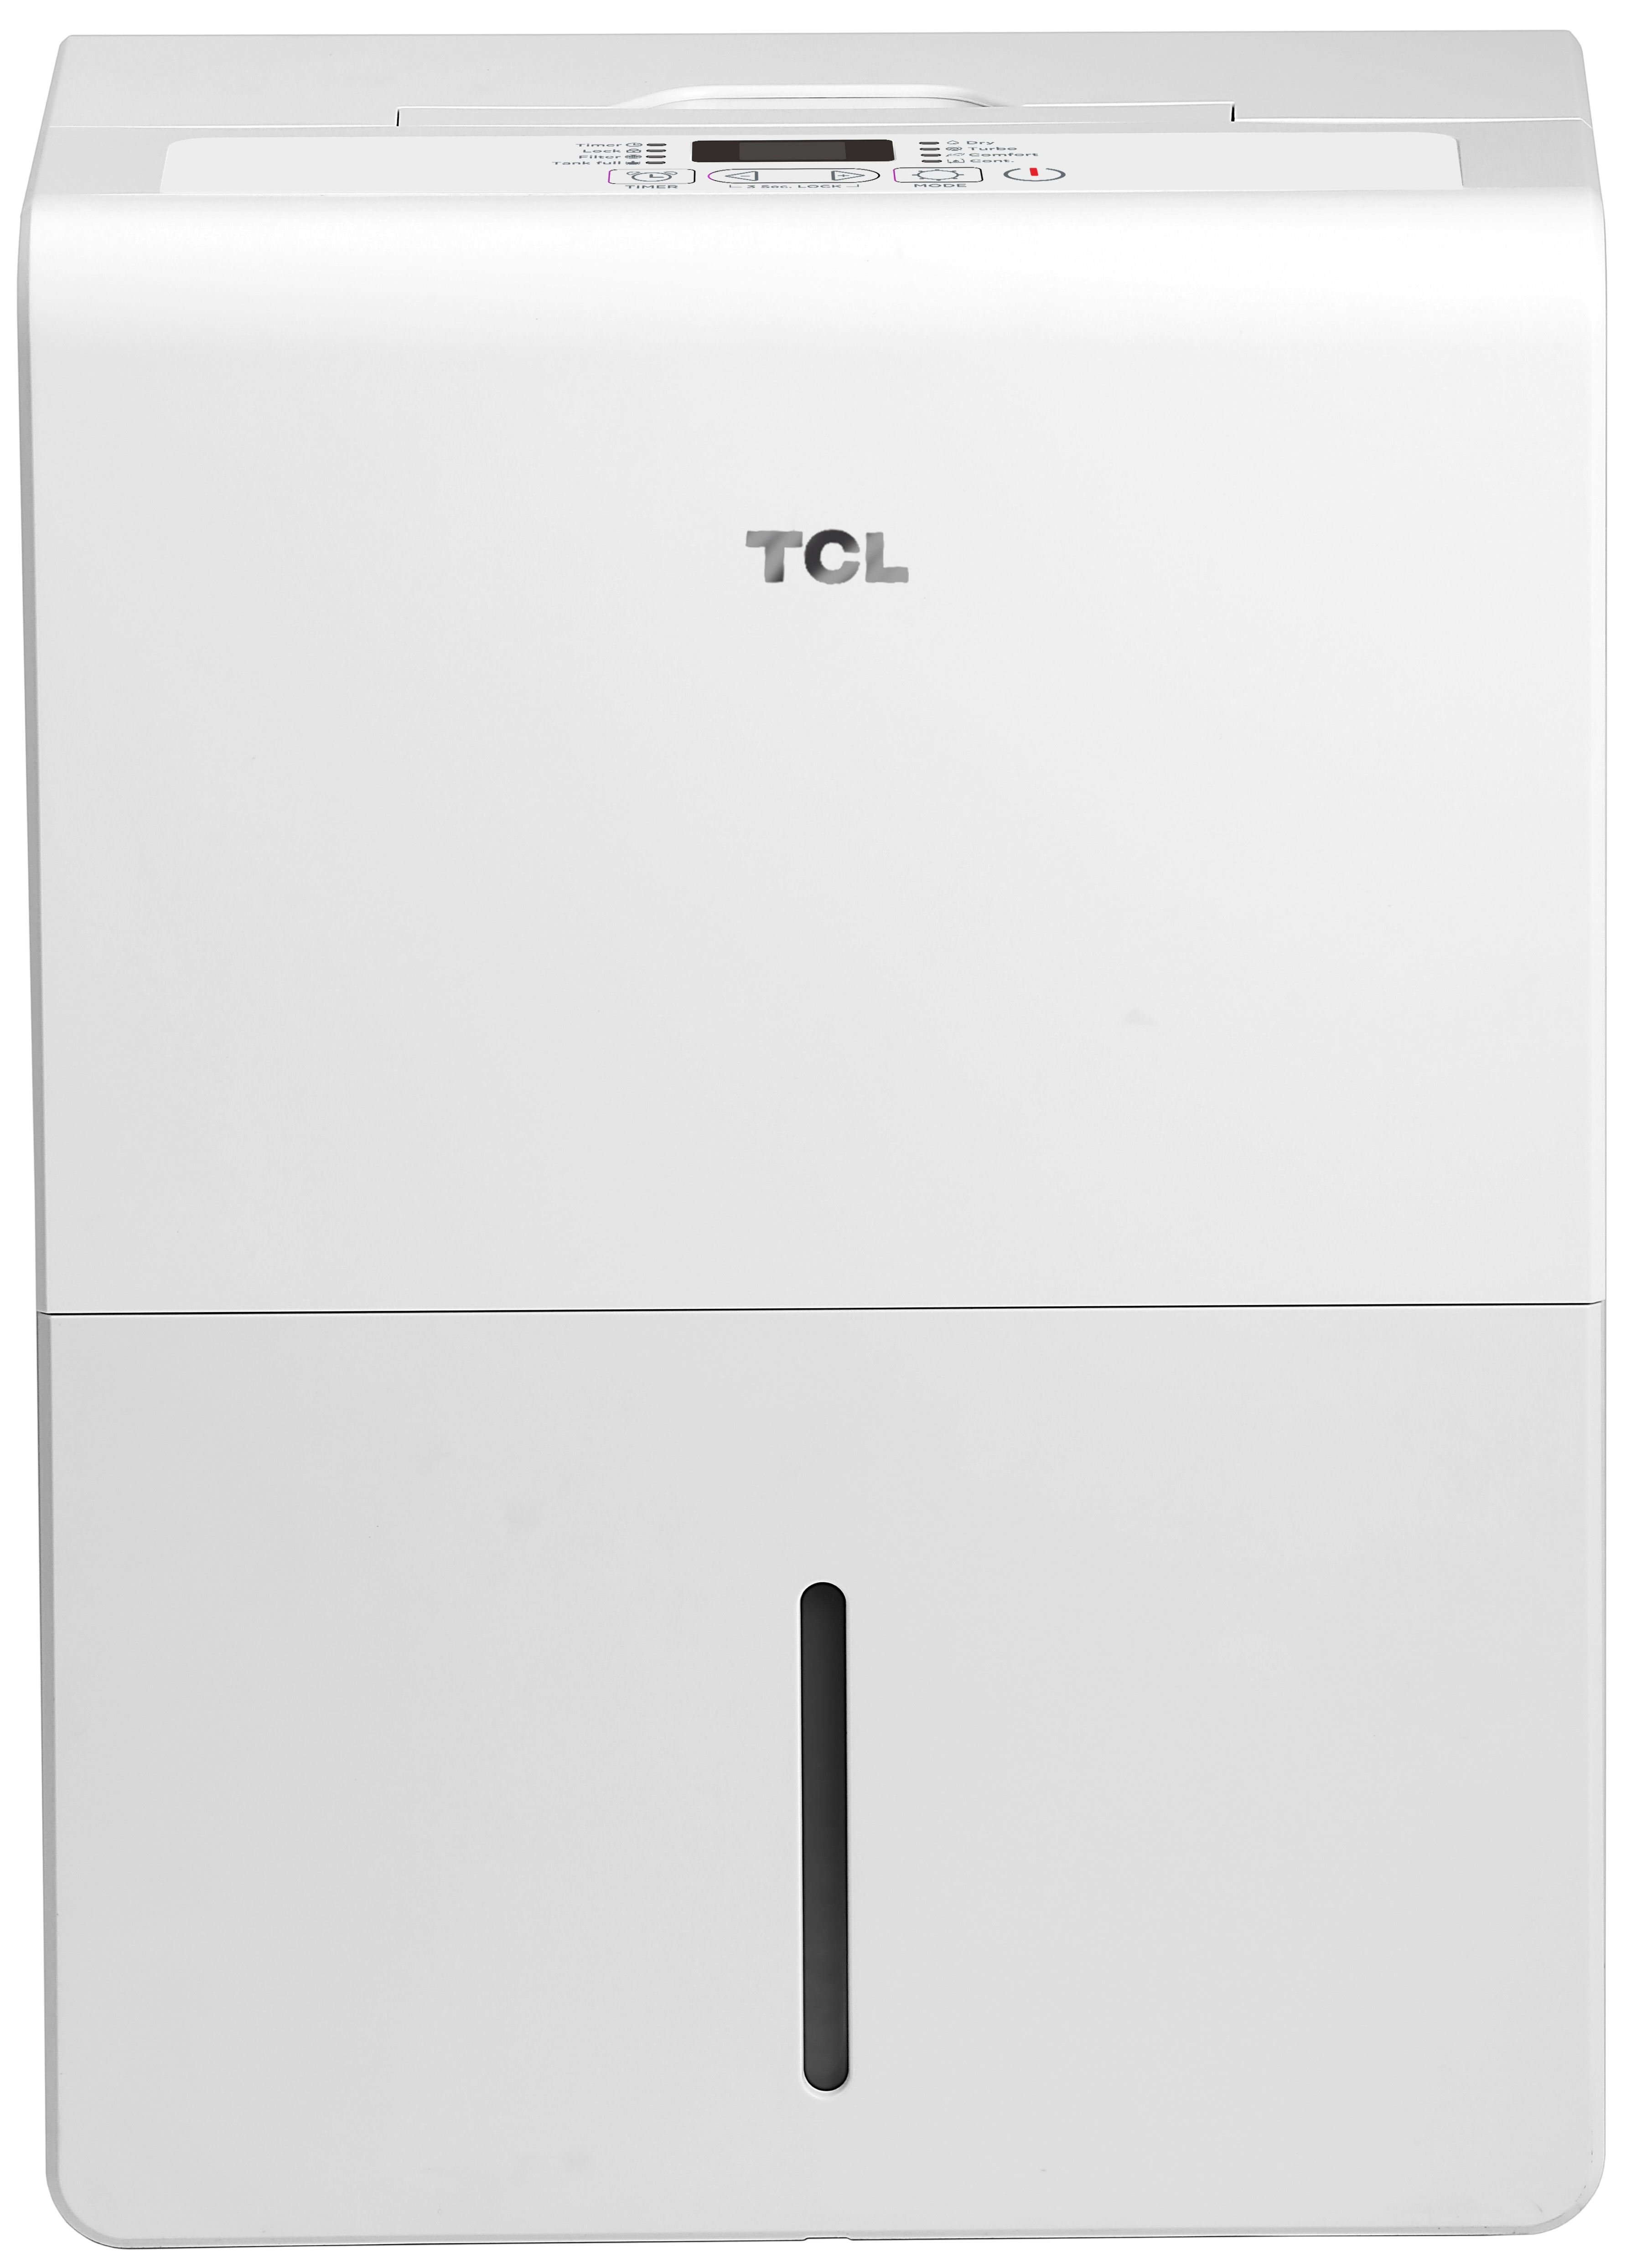 Осушитель воздуха TCL DEM25EB в интернет-магазине, главное фото